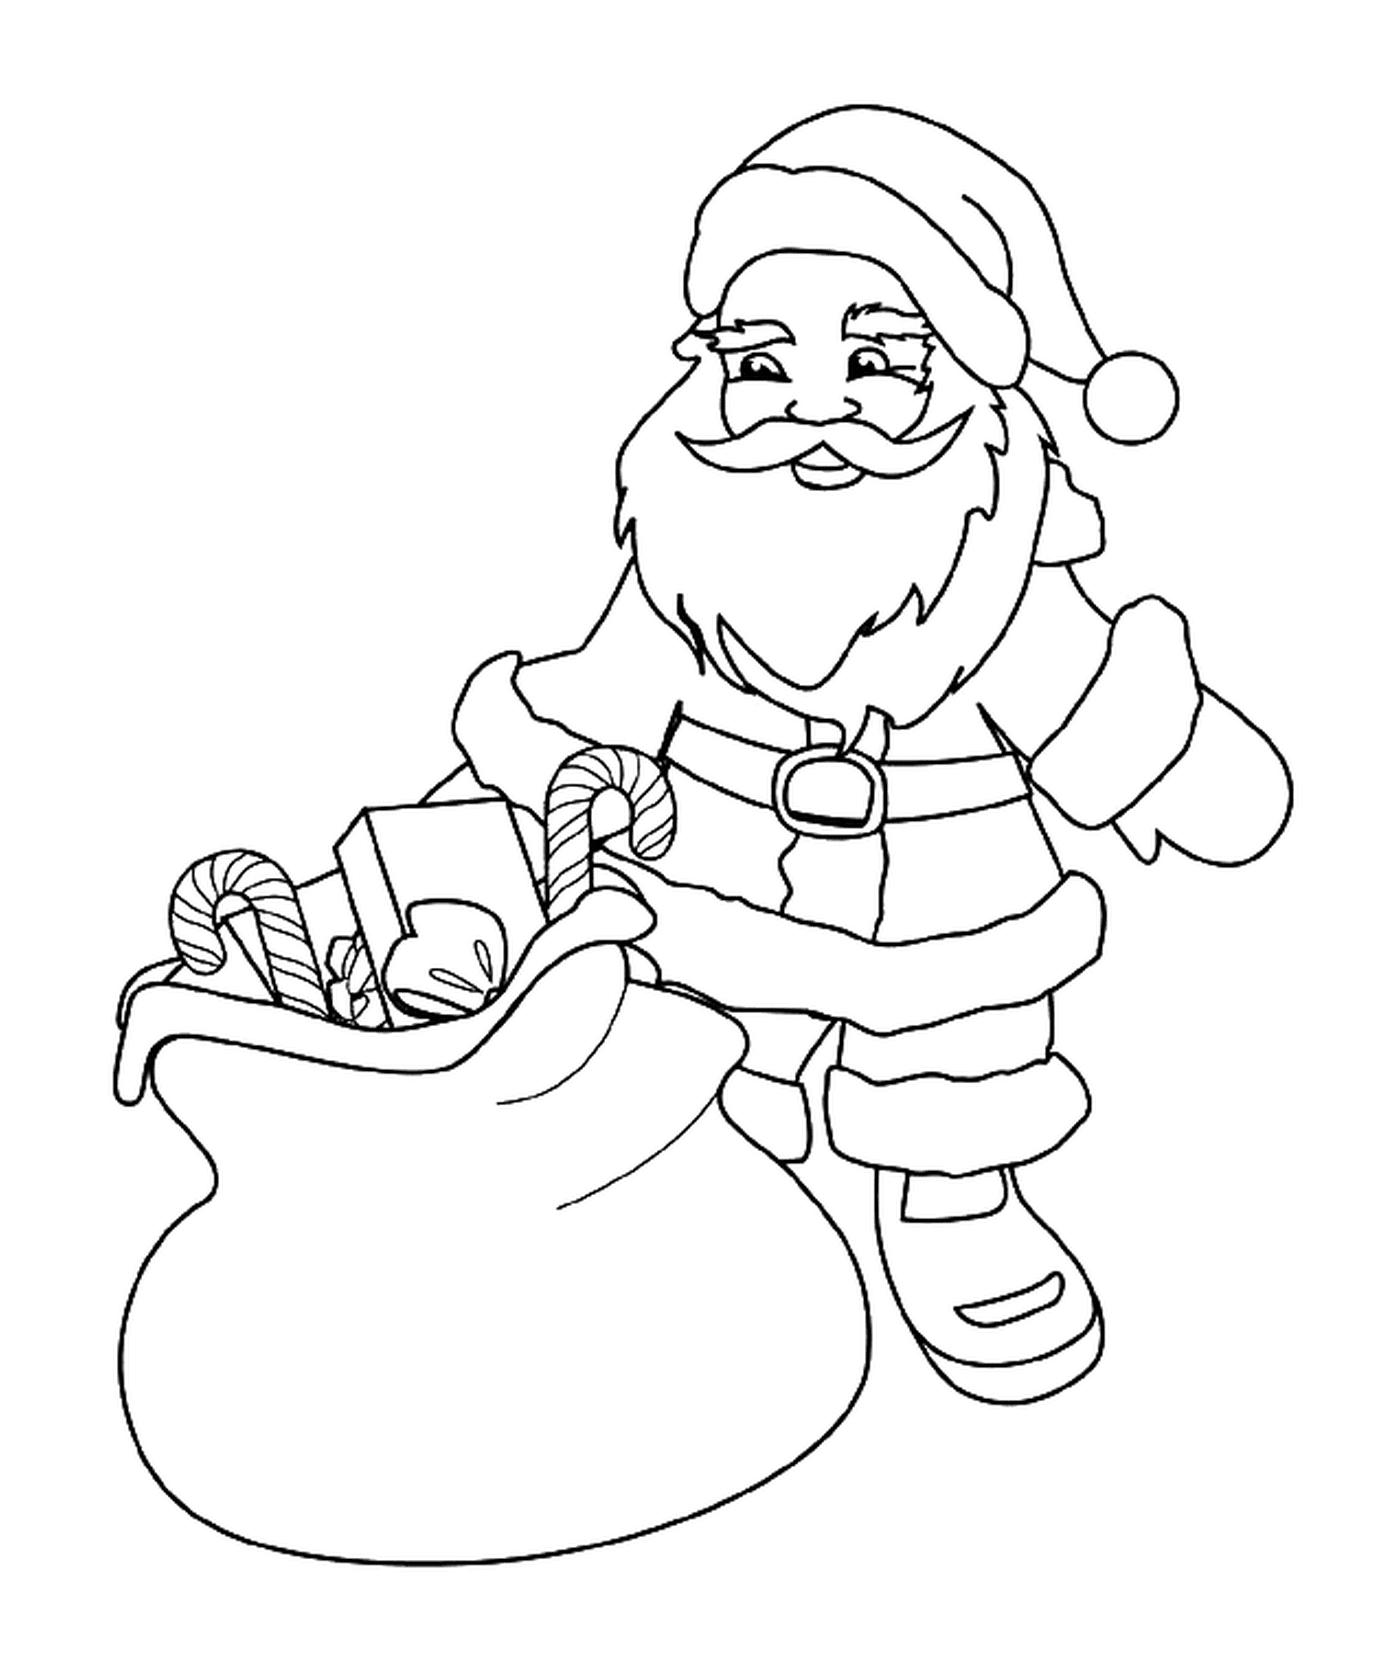  圣诞老人带着一包玩具和糖果 